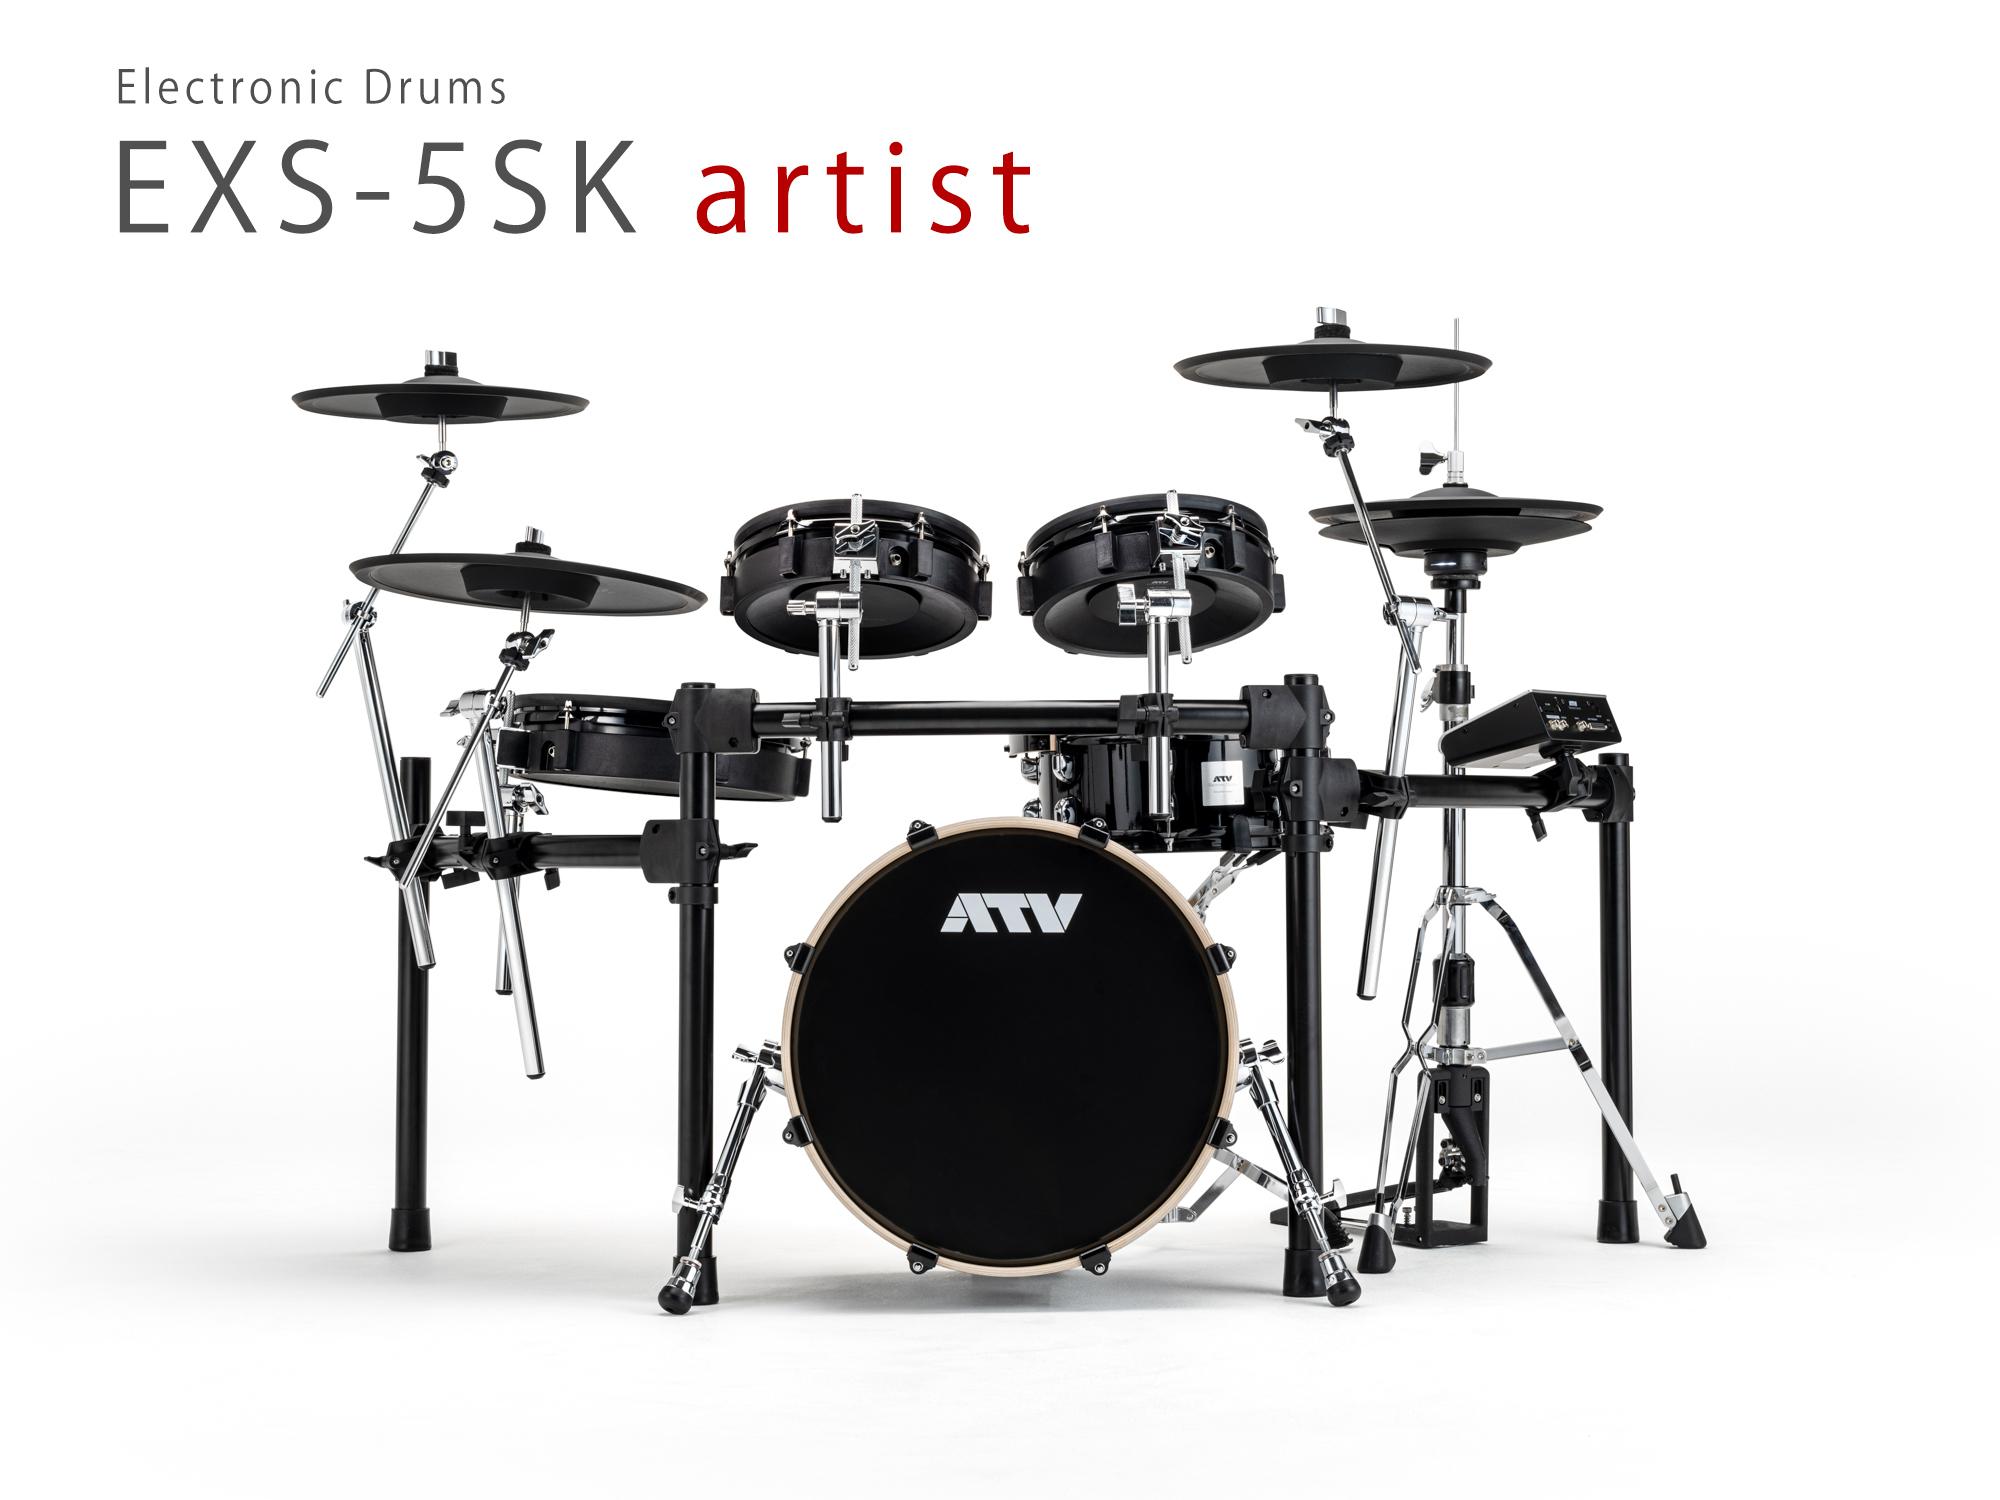 ATV 電子ドラム「EXSシリーズ」の最高峰モデル「EXS-5SK artist」を8月